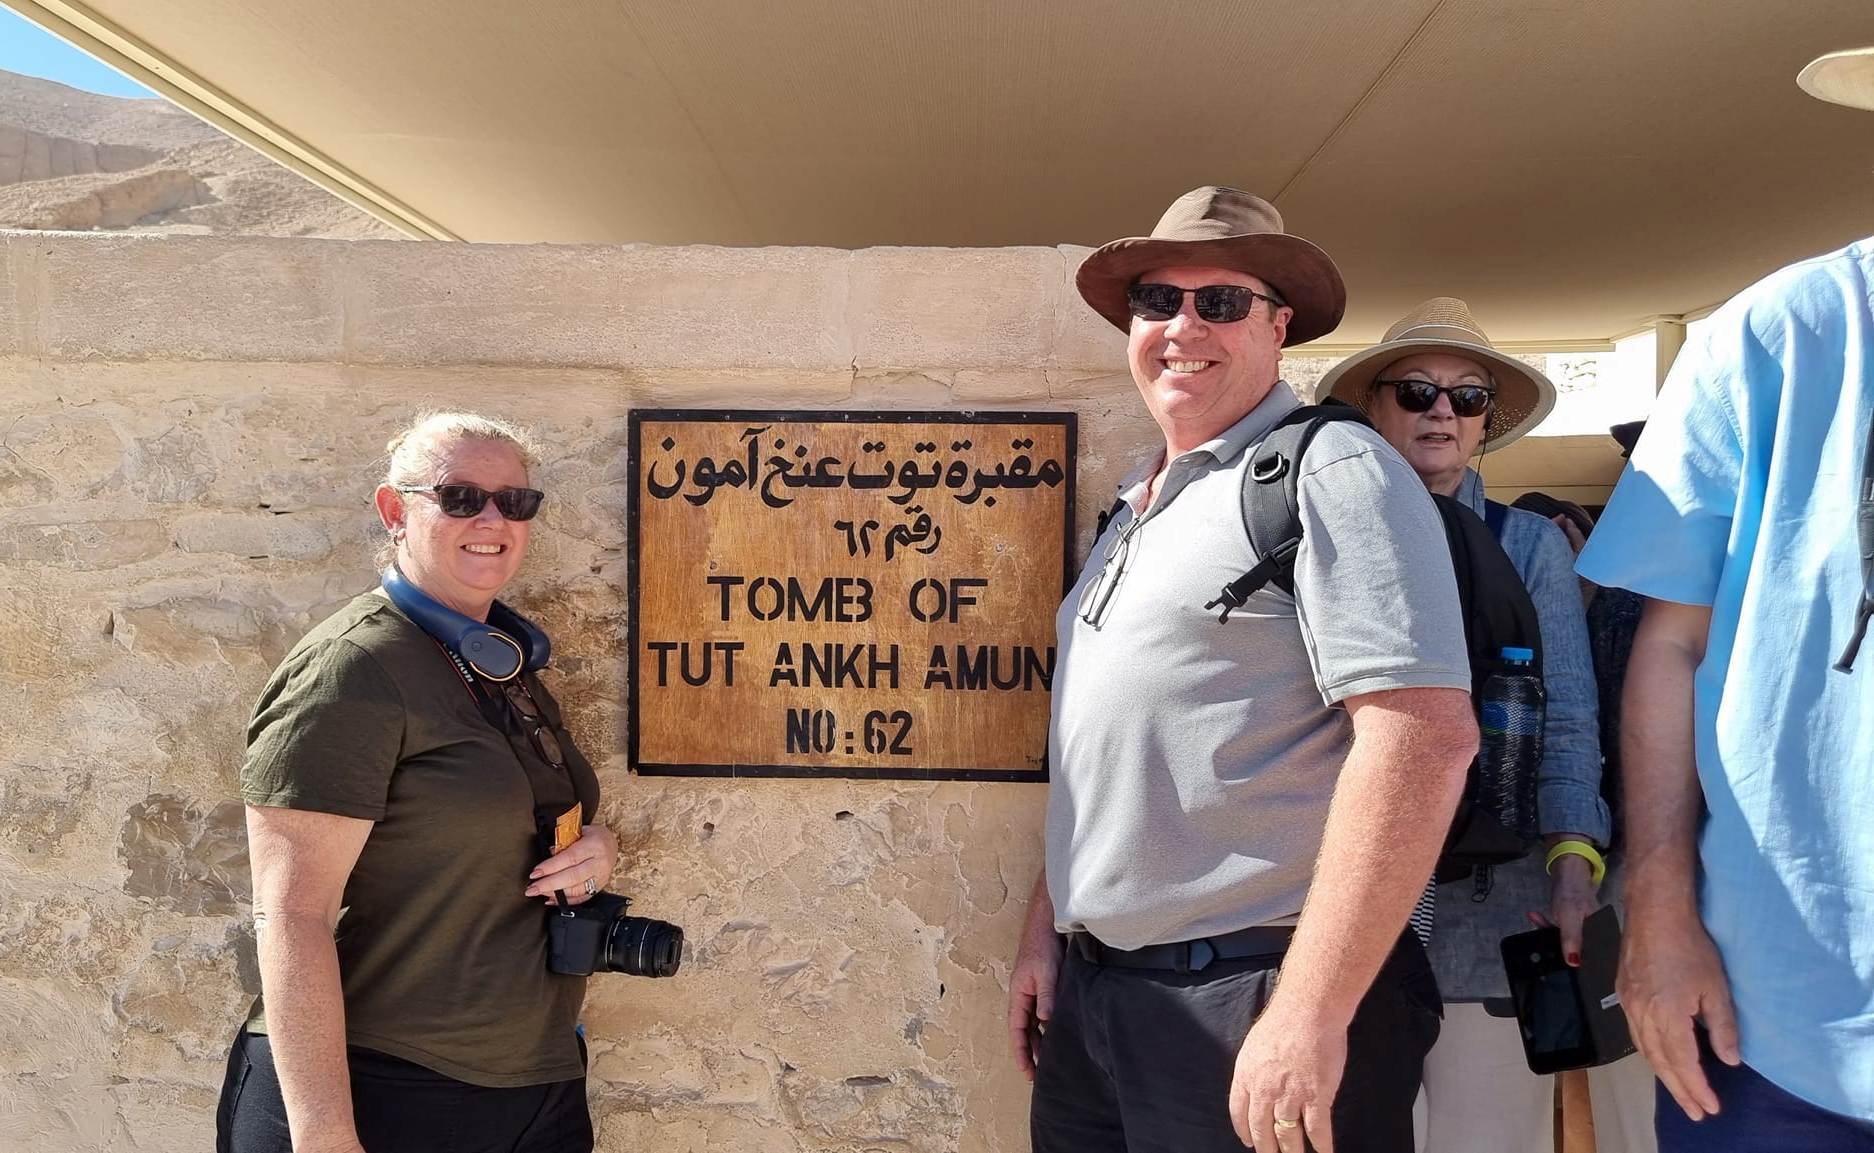 السياح يستمتعون بزيارة مقبرة الملك توت عنخ آمون